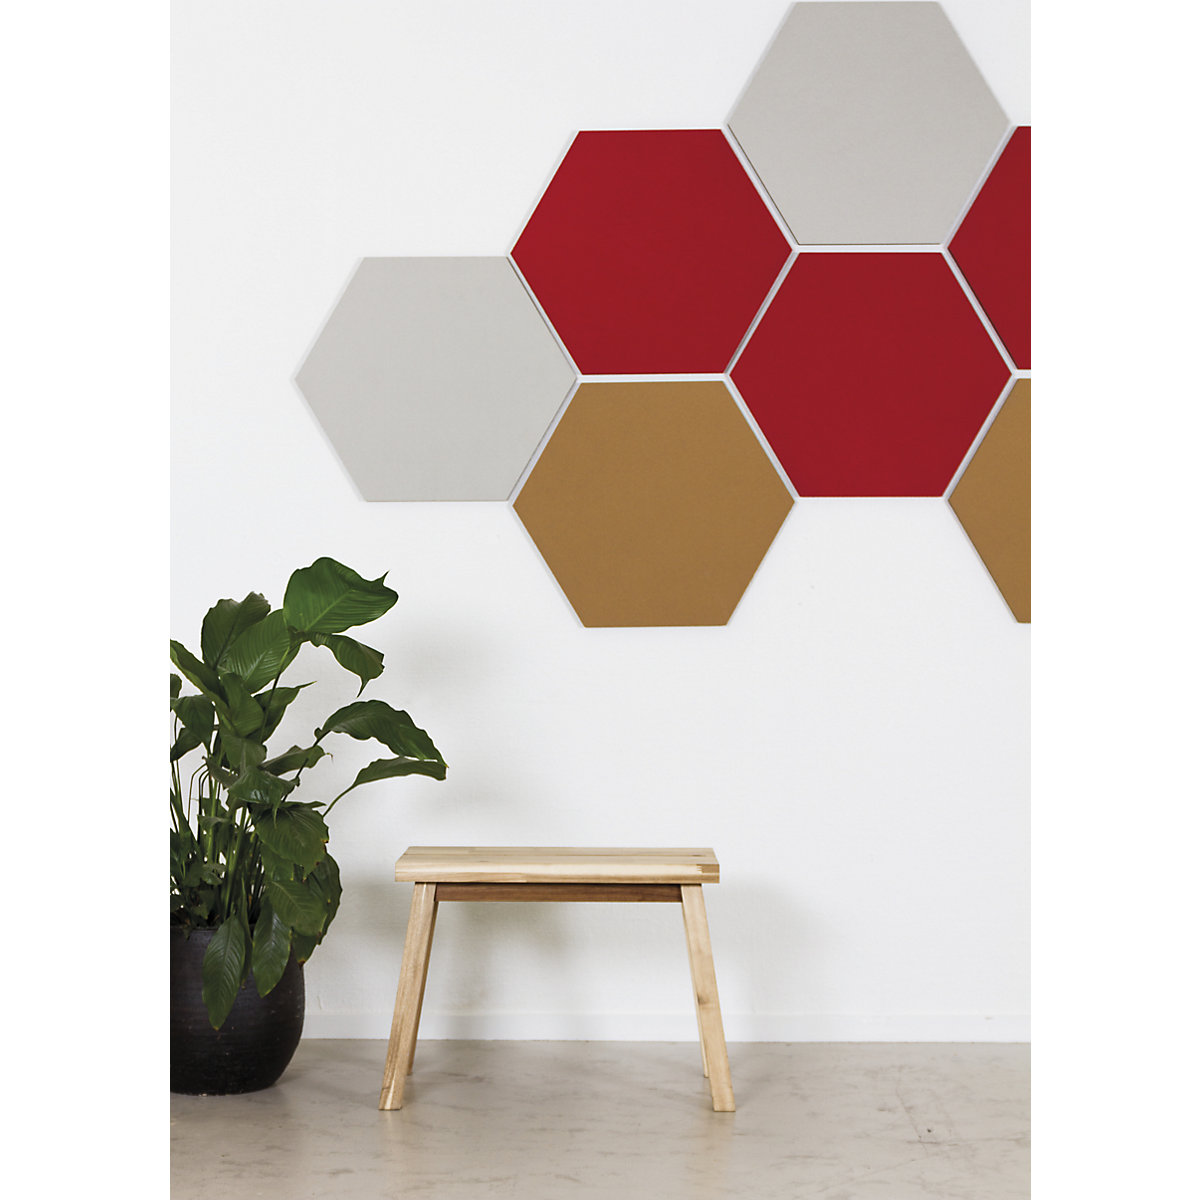 Quadro de pinos com design hexagonal – Chameleon (Imagem do produto 12)-11